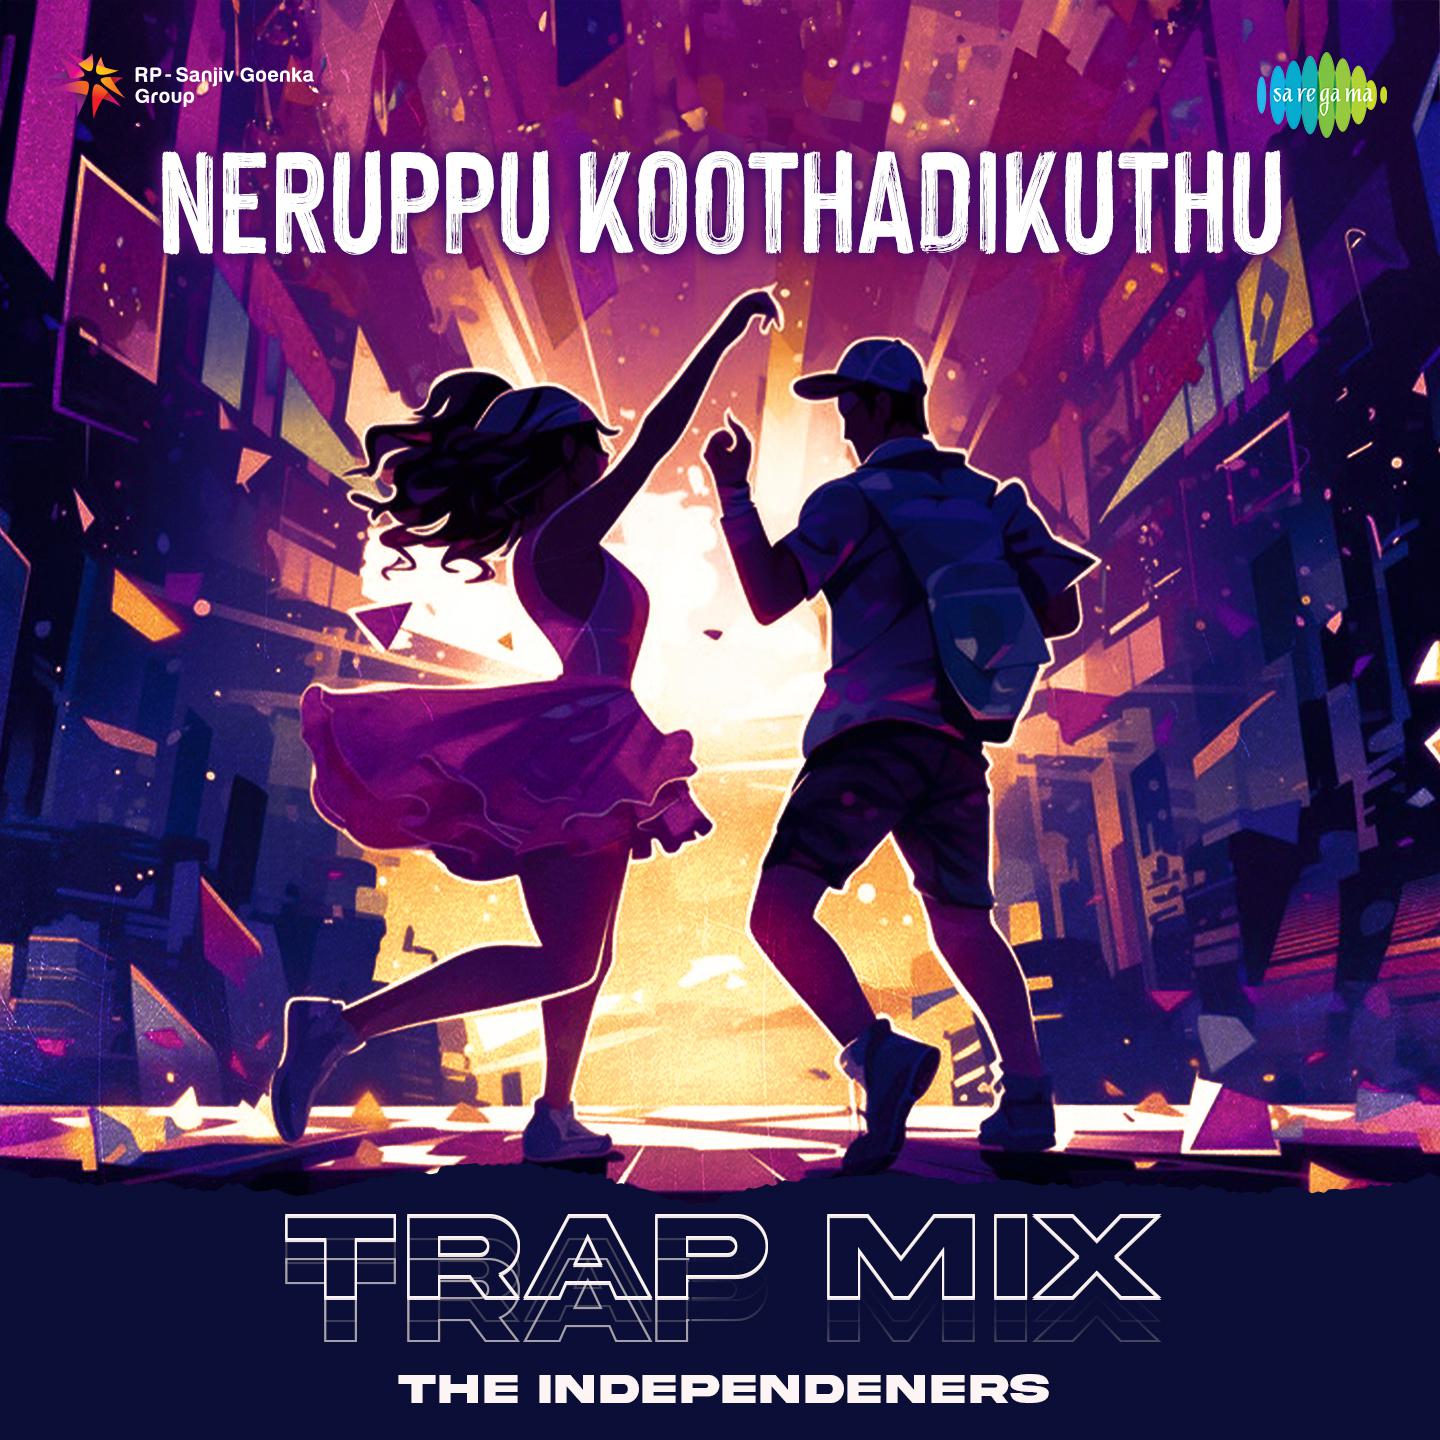 The Independeners - Neruppu Koothadikuthu - Trap Mix